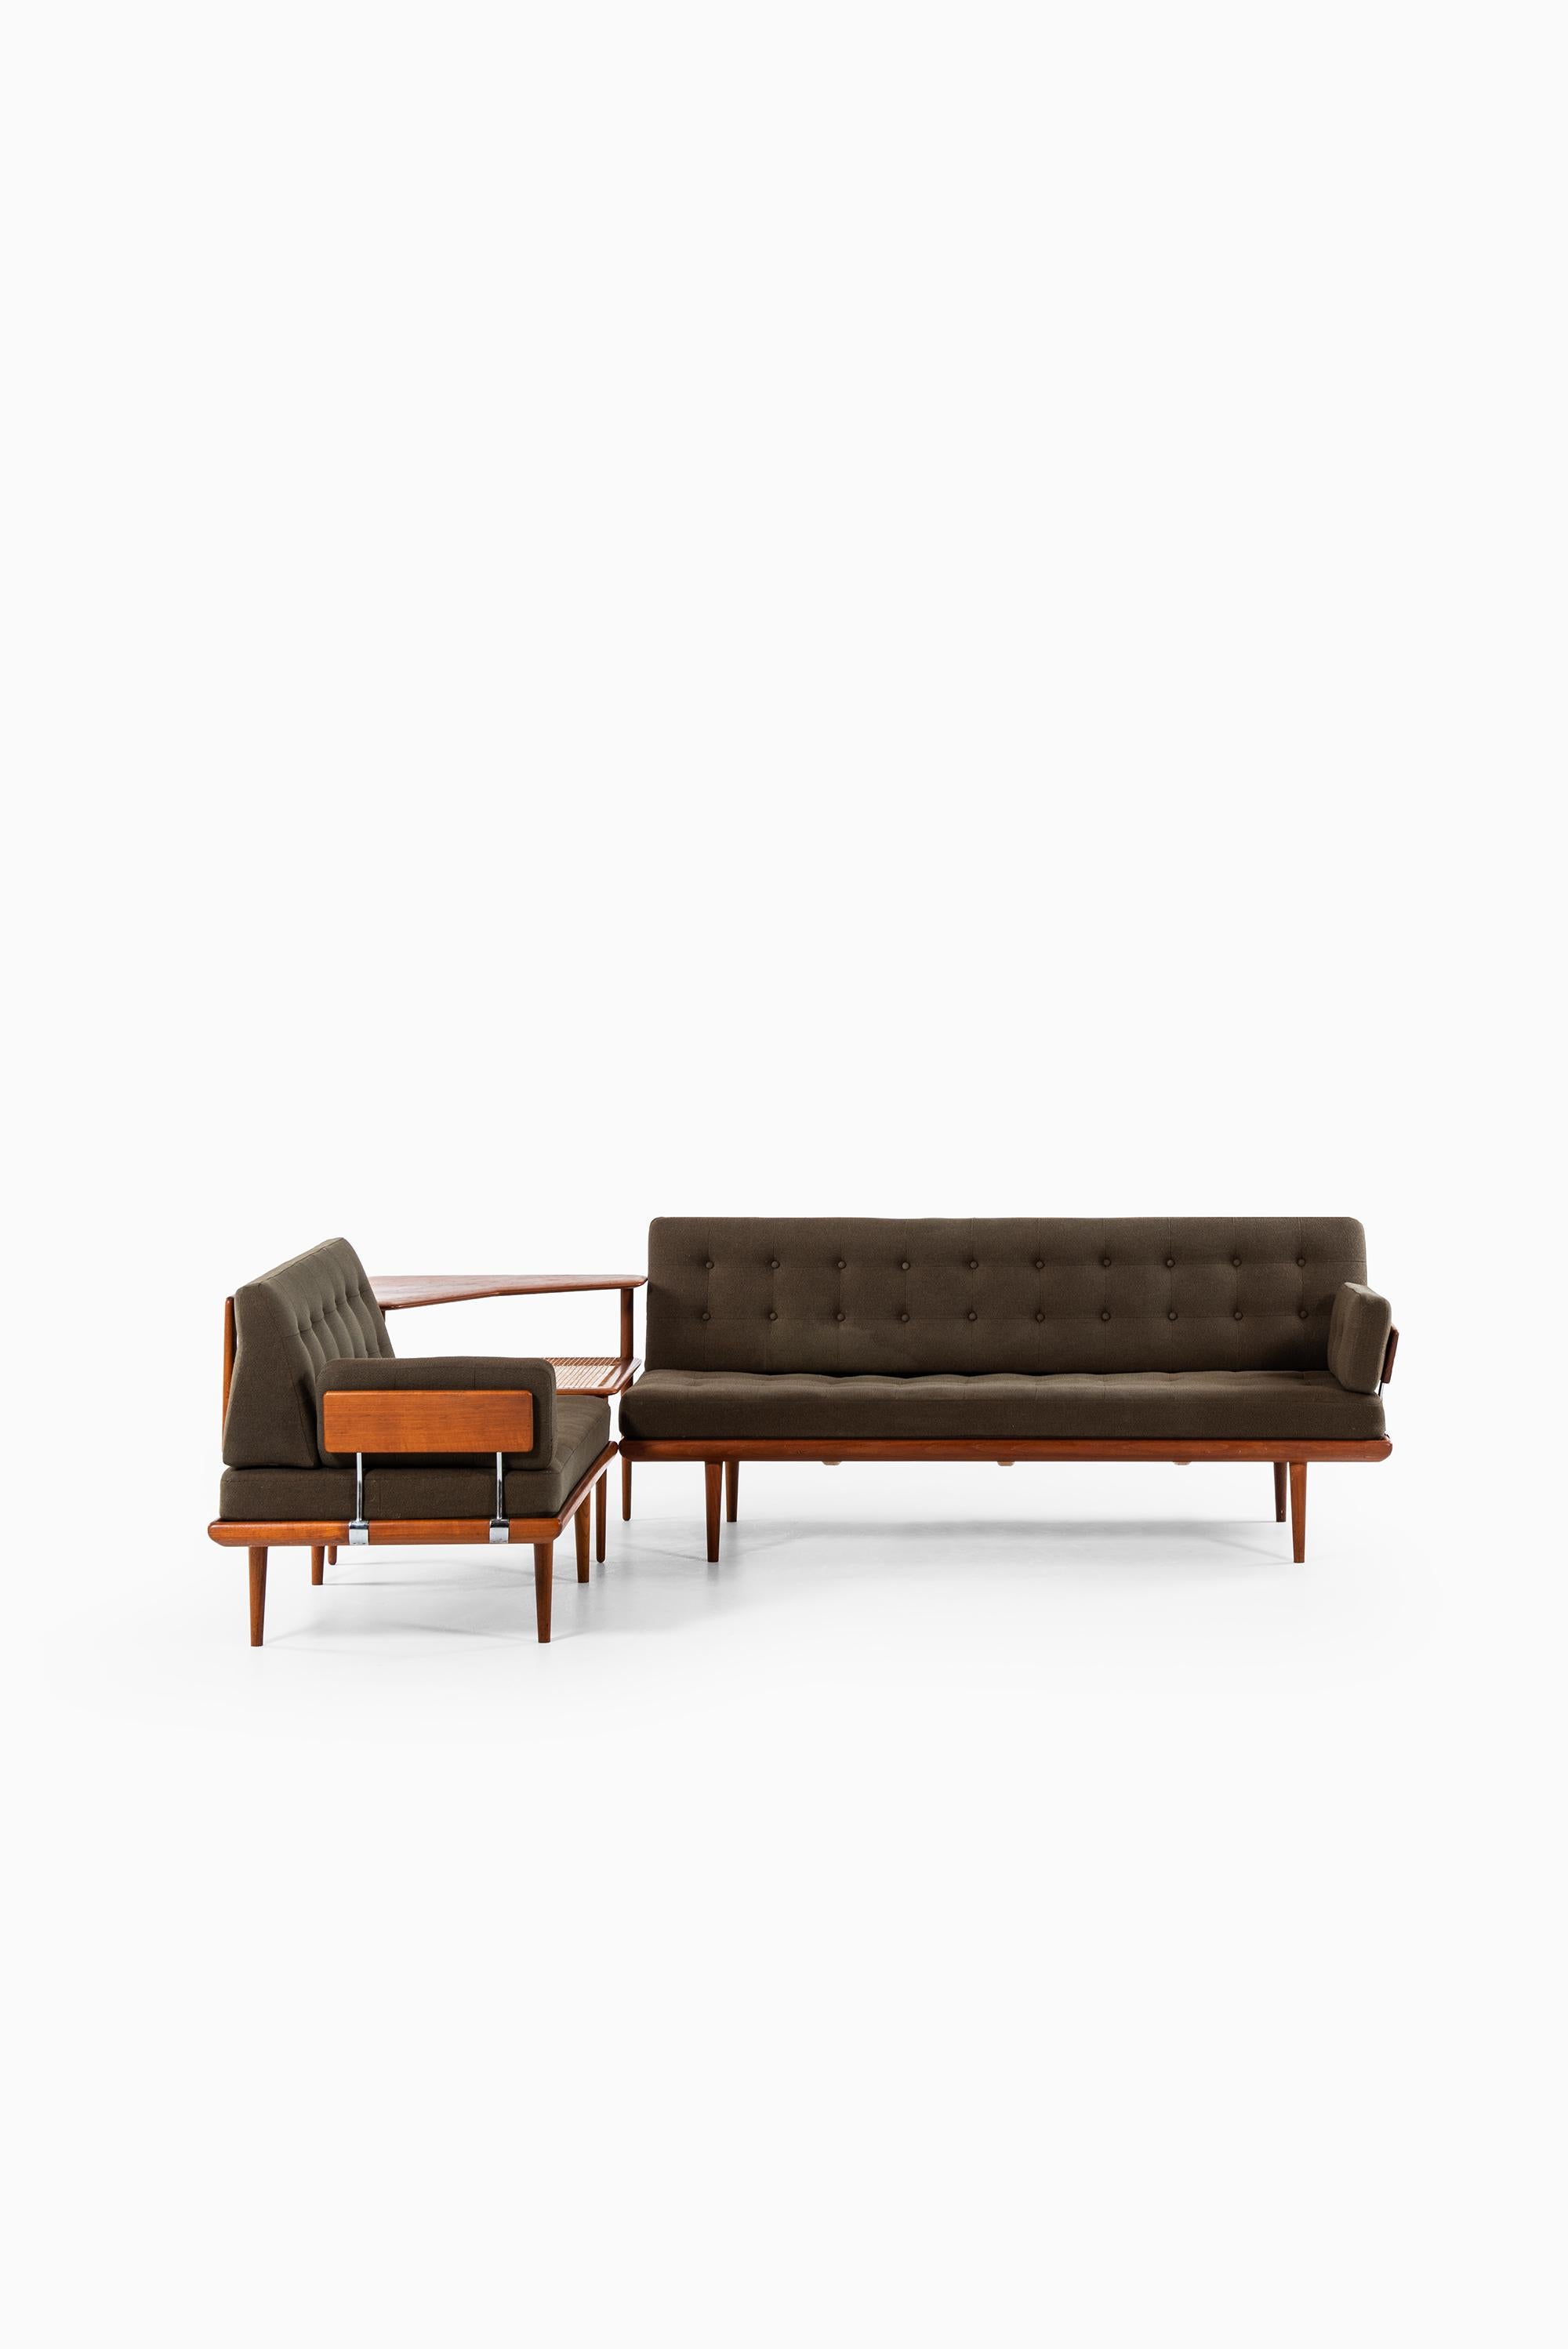 Sofa model Minerva designed by Peter Hvidt & Orla Mølgaard-Nielsen. Produced by France & Daverkosen in Denmark.

Dimensions 3-seat (W x D x H): 190 x 77 x 79 cm, SH: 40 cm
Dimensions 2-seat (W x D x H): 125 x 77 x 79 cm, SH: 40 cm
Dimensions